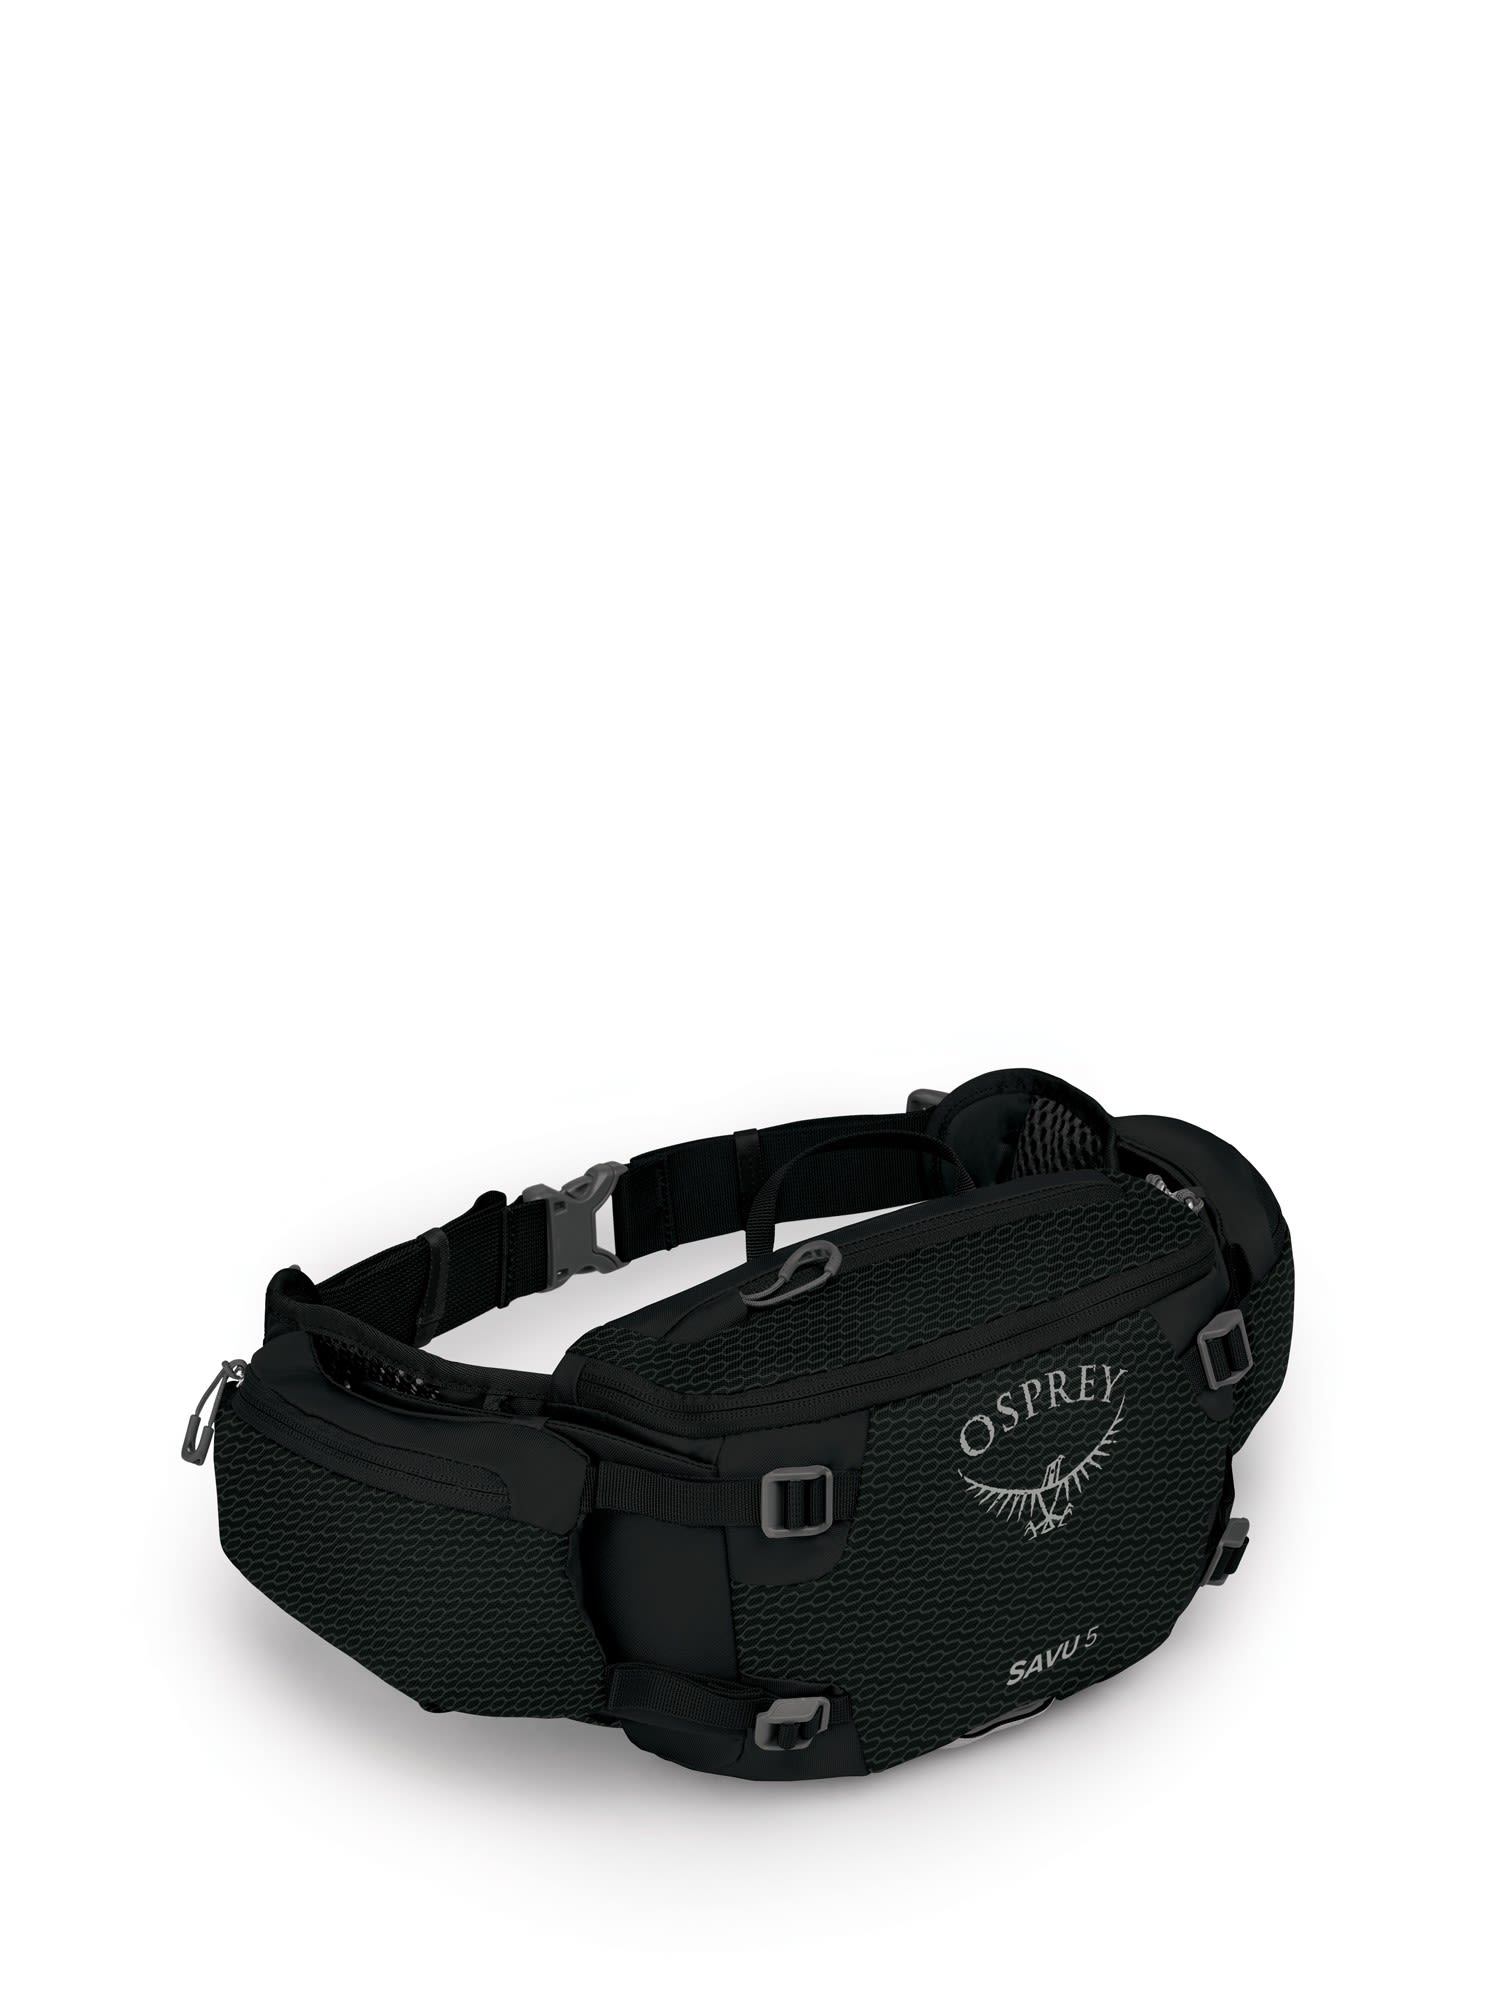 Osprey Savu 5 Schwarz- Grtel- und Hfttaschen- Grsse 5l - Farbe Black